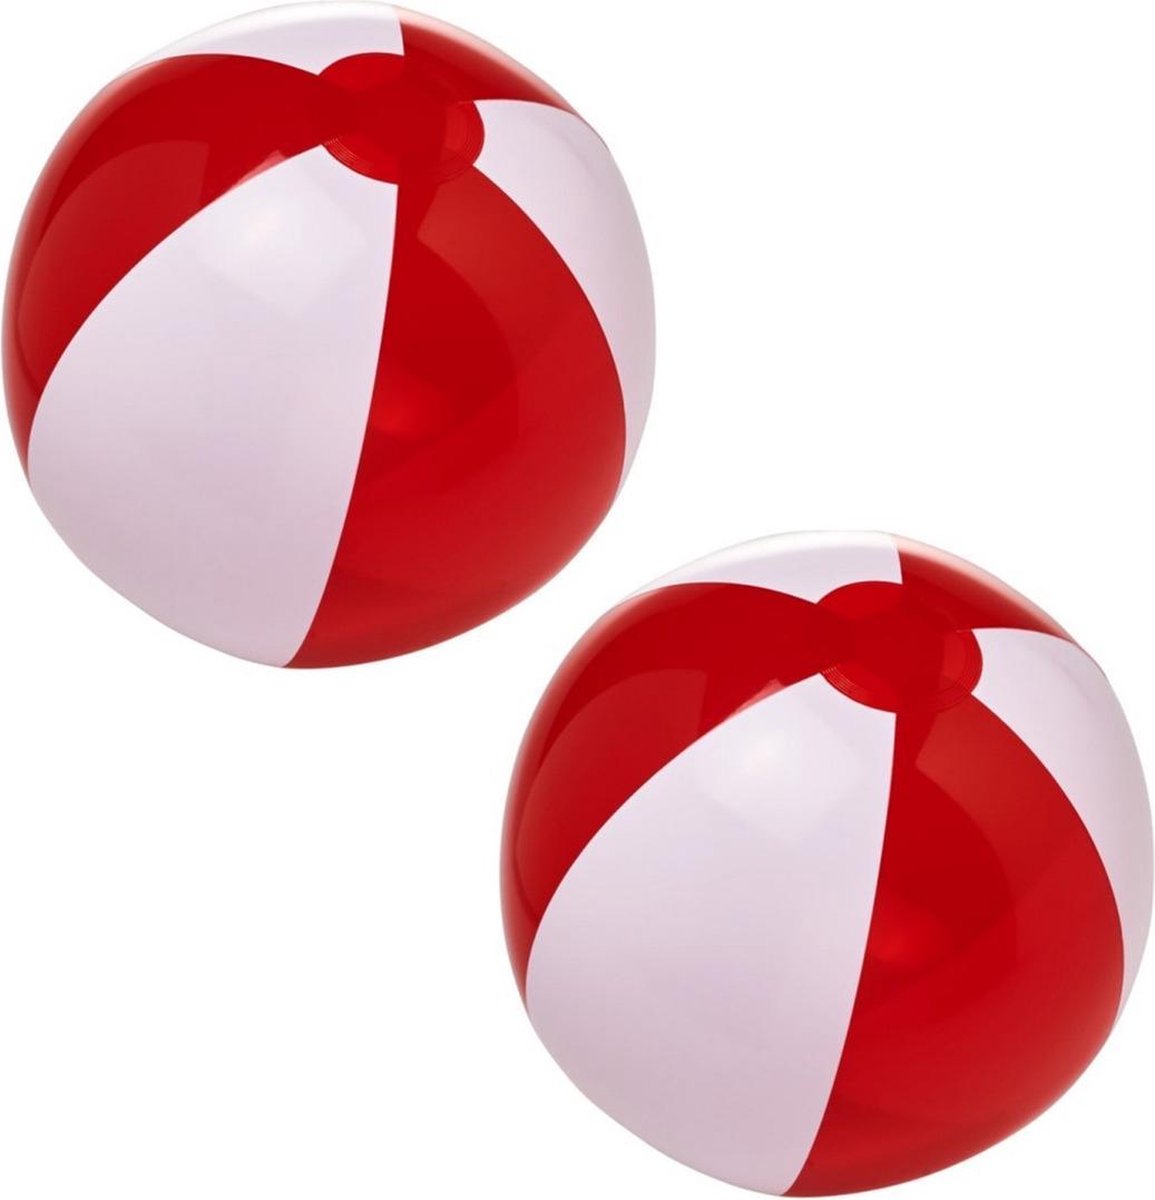 10x stuks opblaasbare strandballen rood/wit 30 cm - Buitenspeelgoed waterspeelgoed opblaasbaar